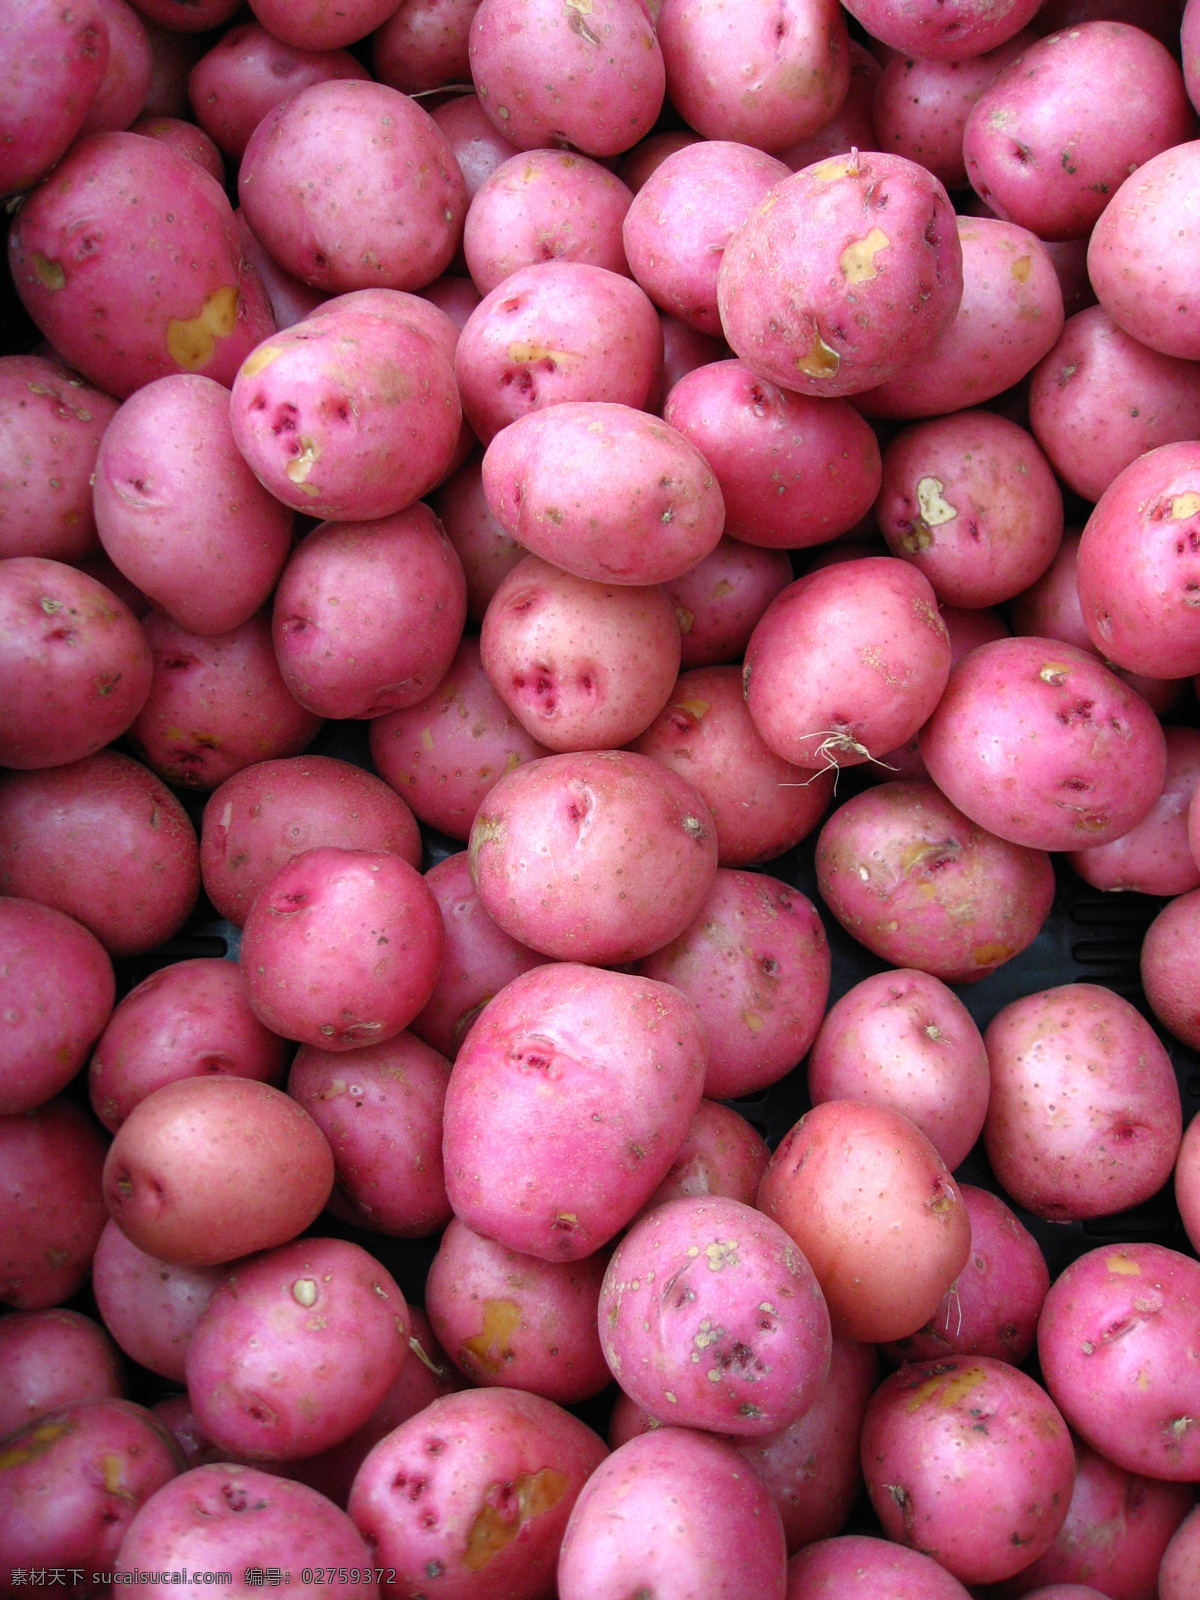 红皮土豆 马铃薯 洋芋 馍馍蛋 营养蔬菜 药用价值 食物原料 餐饮美食